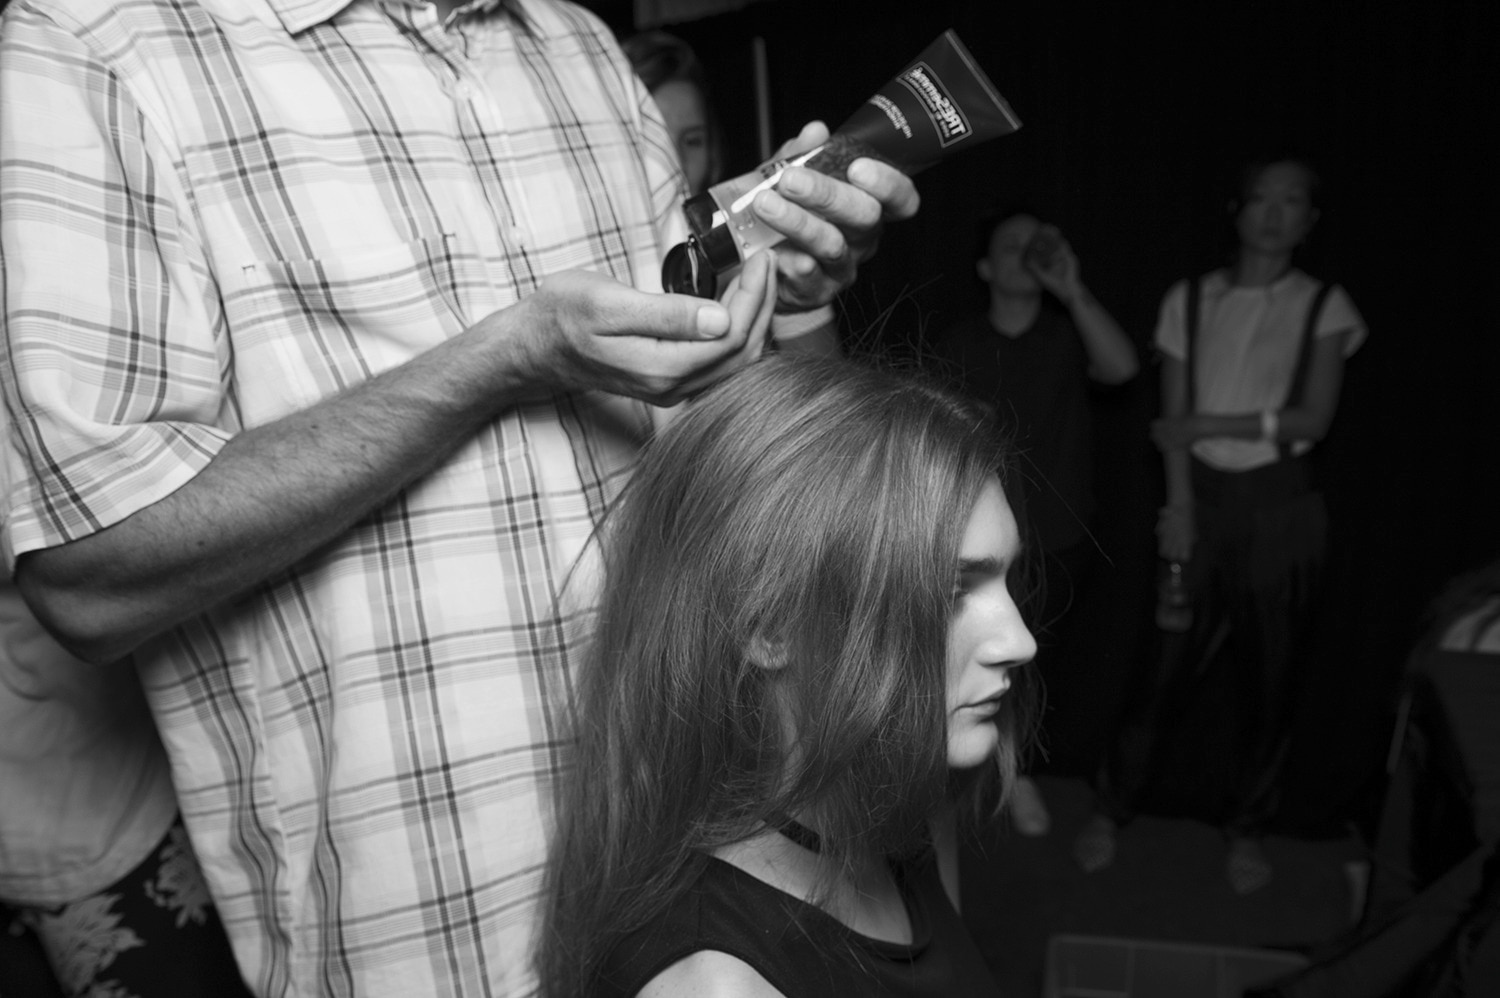 Un estilista sosteniendo un tubo de producto y apretándolo con sus manos listo para aplicarlo en el pelo de una modelo